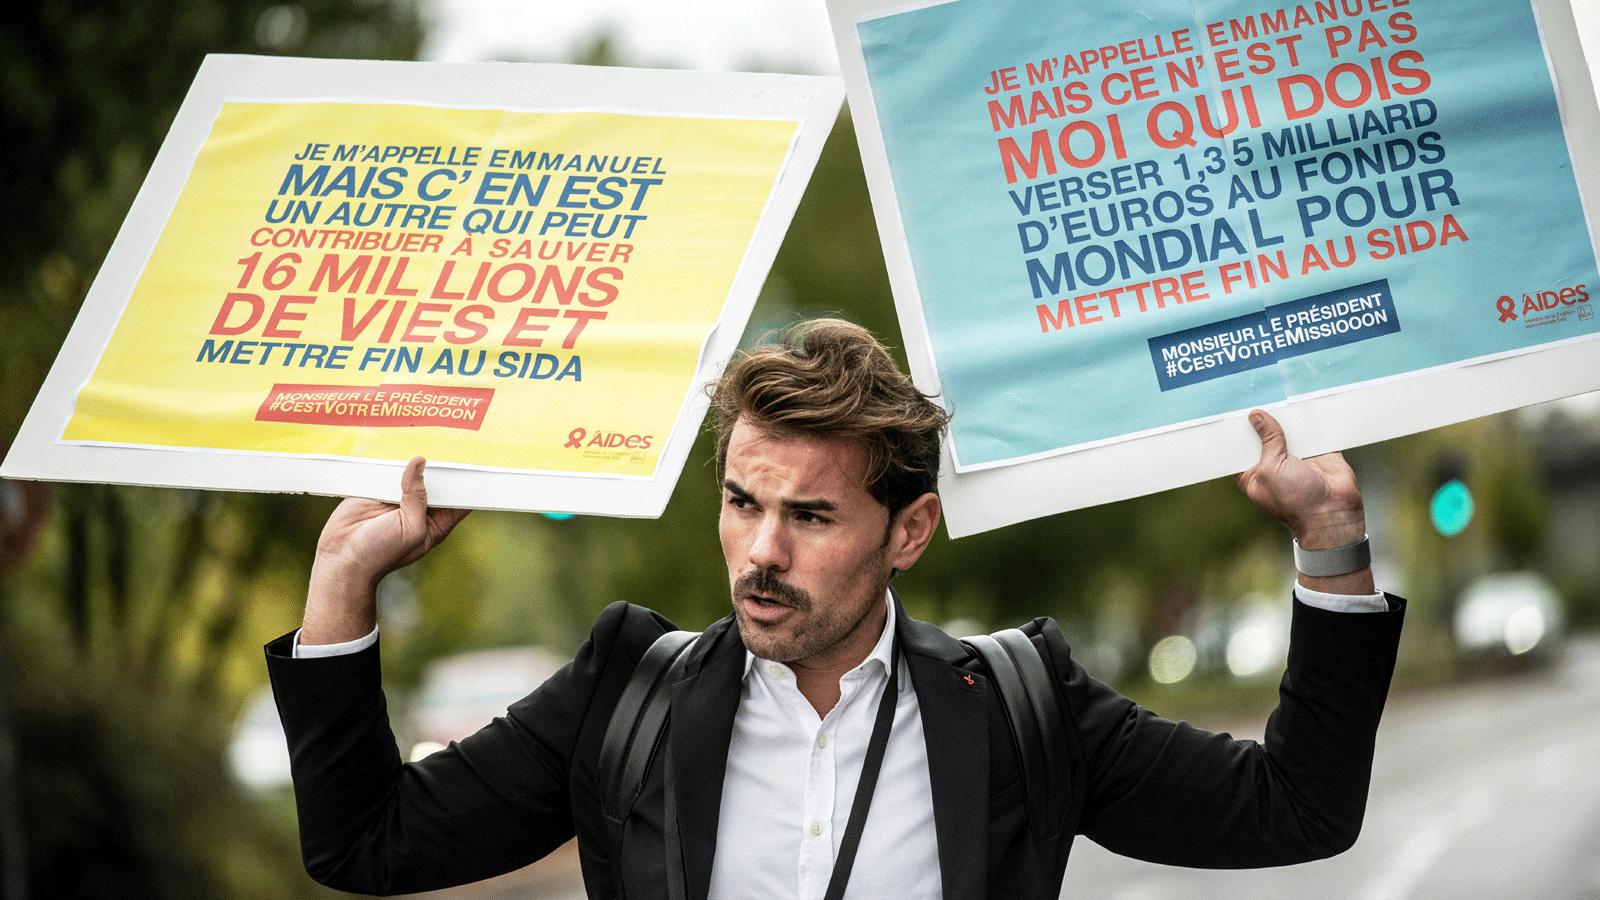 عضو في منظمة غير حكومية فرنسية يطالب بمزيد من الأموال للصندوق العالمي لمكافحة الإيدز والسل والملاريا.